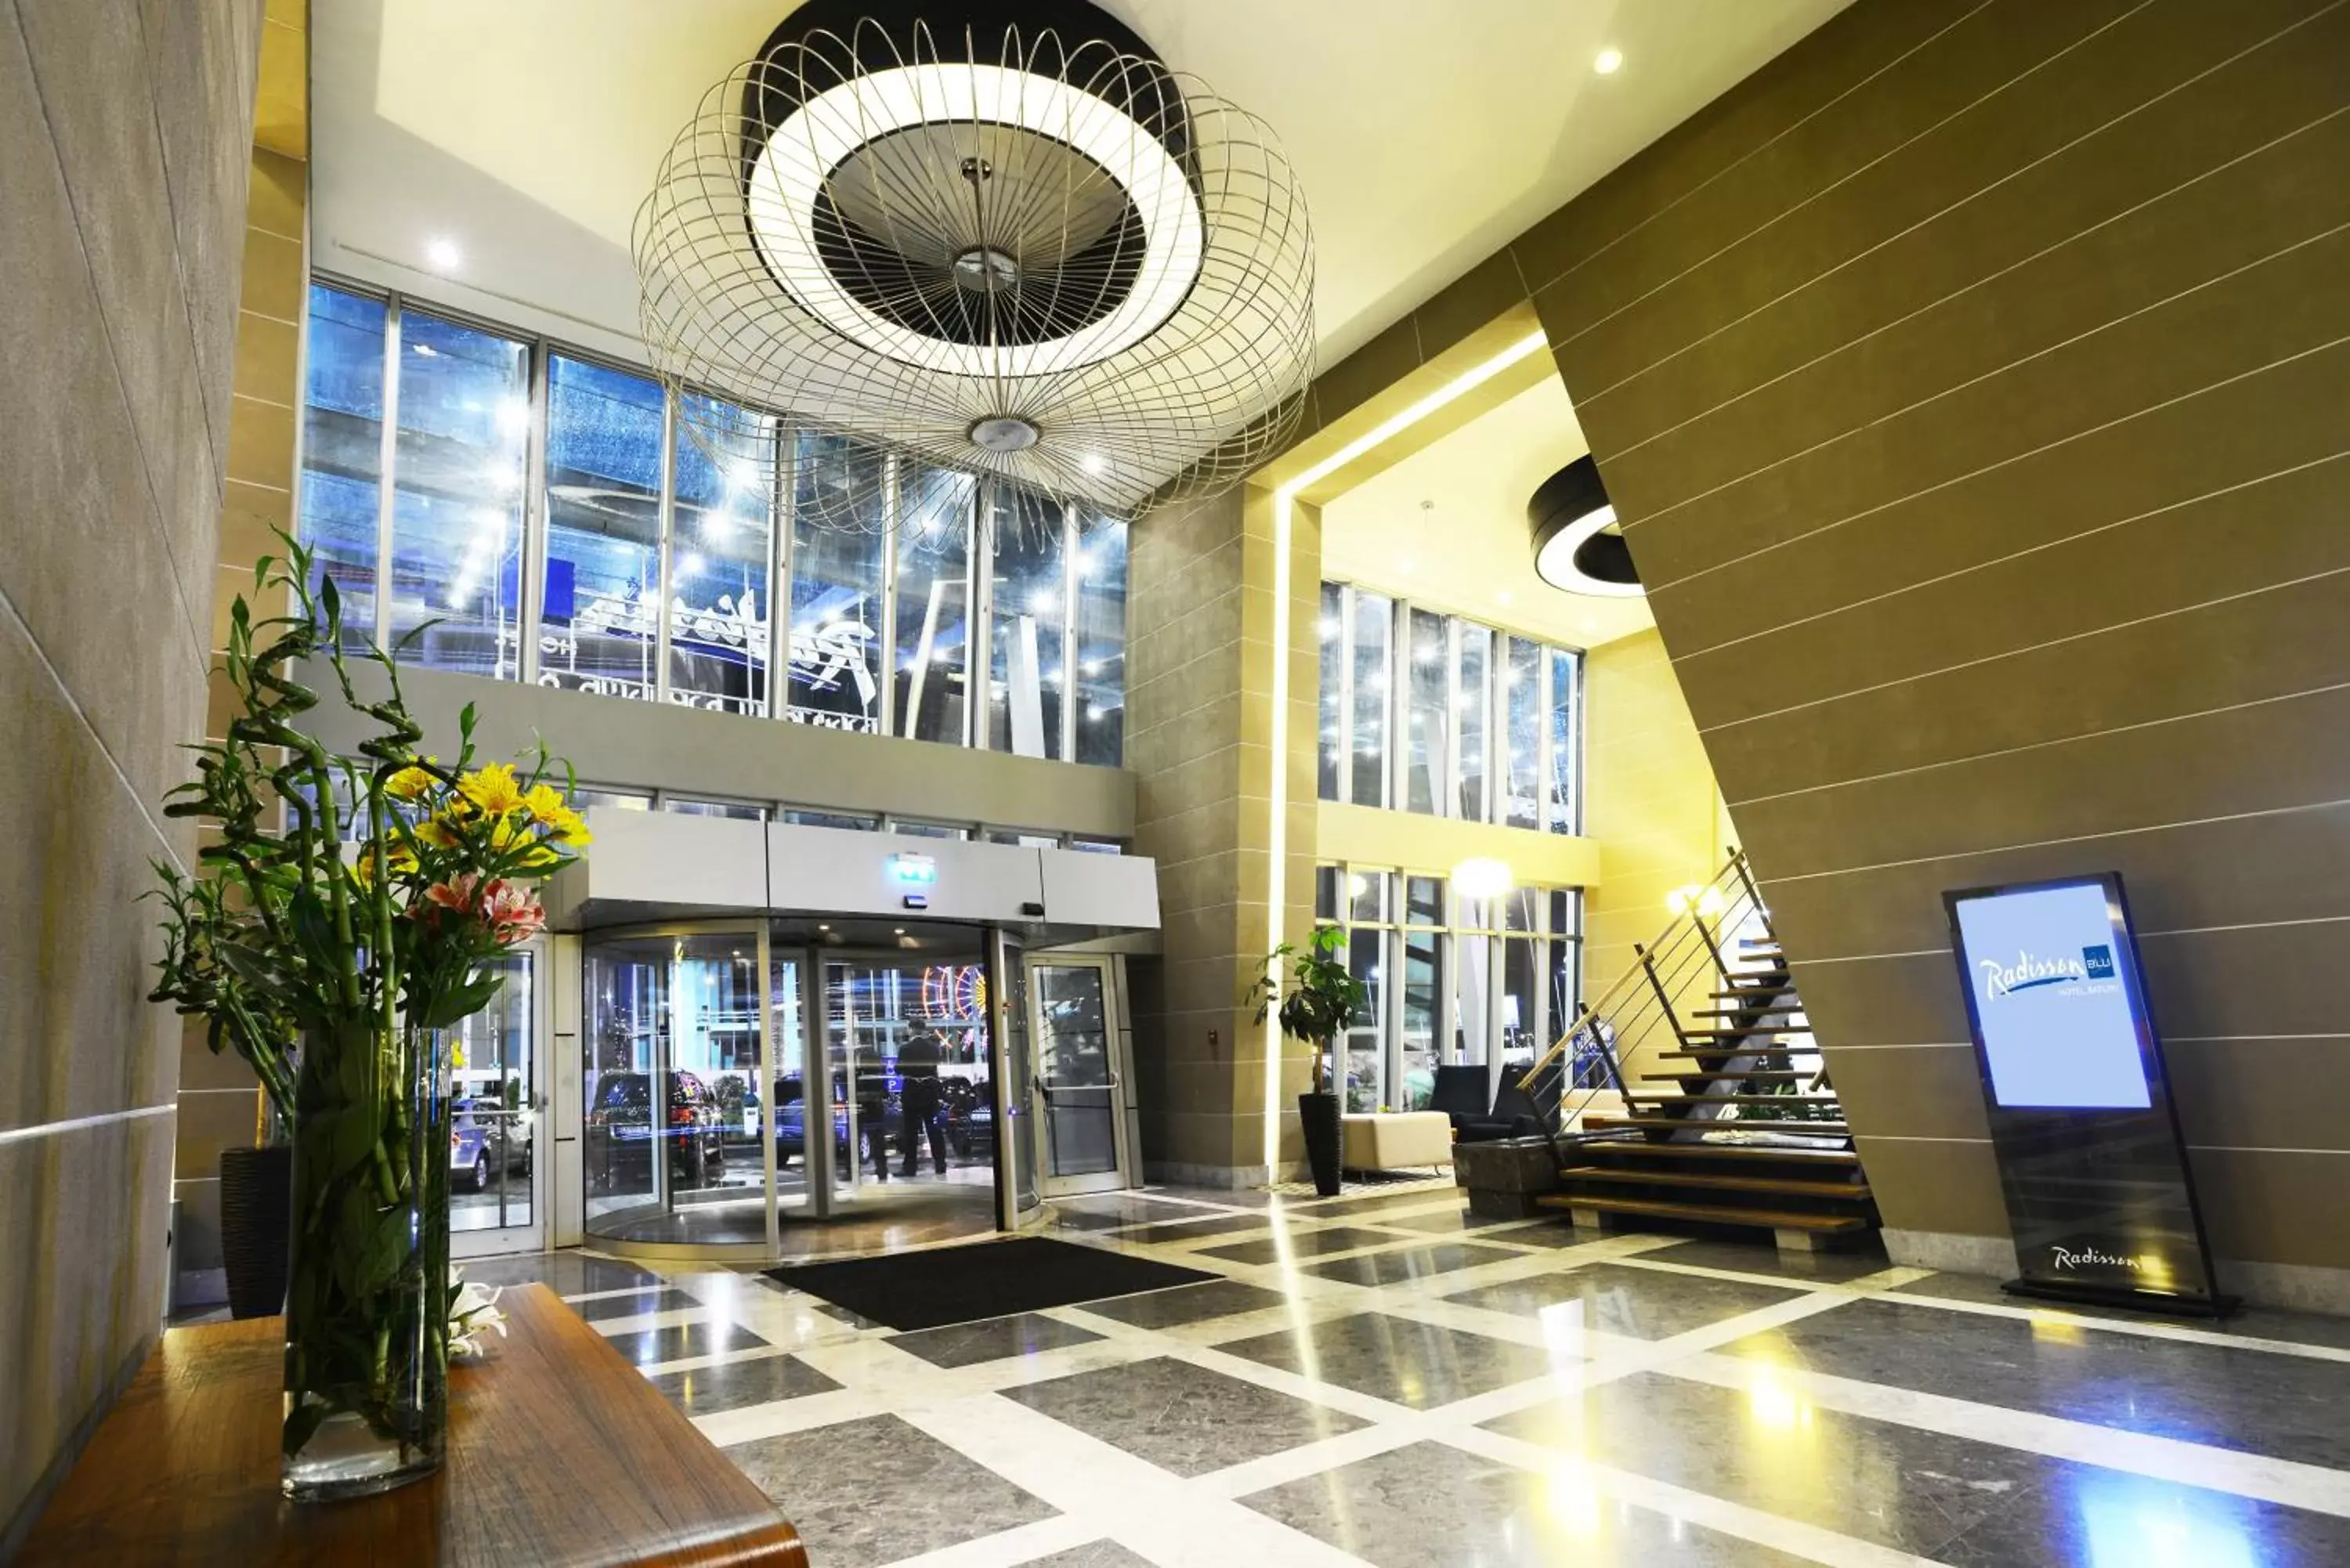 Lobby or reception, Lobby/Reception in Radisson Blu Hotel Batumi